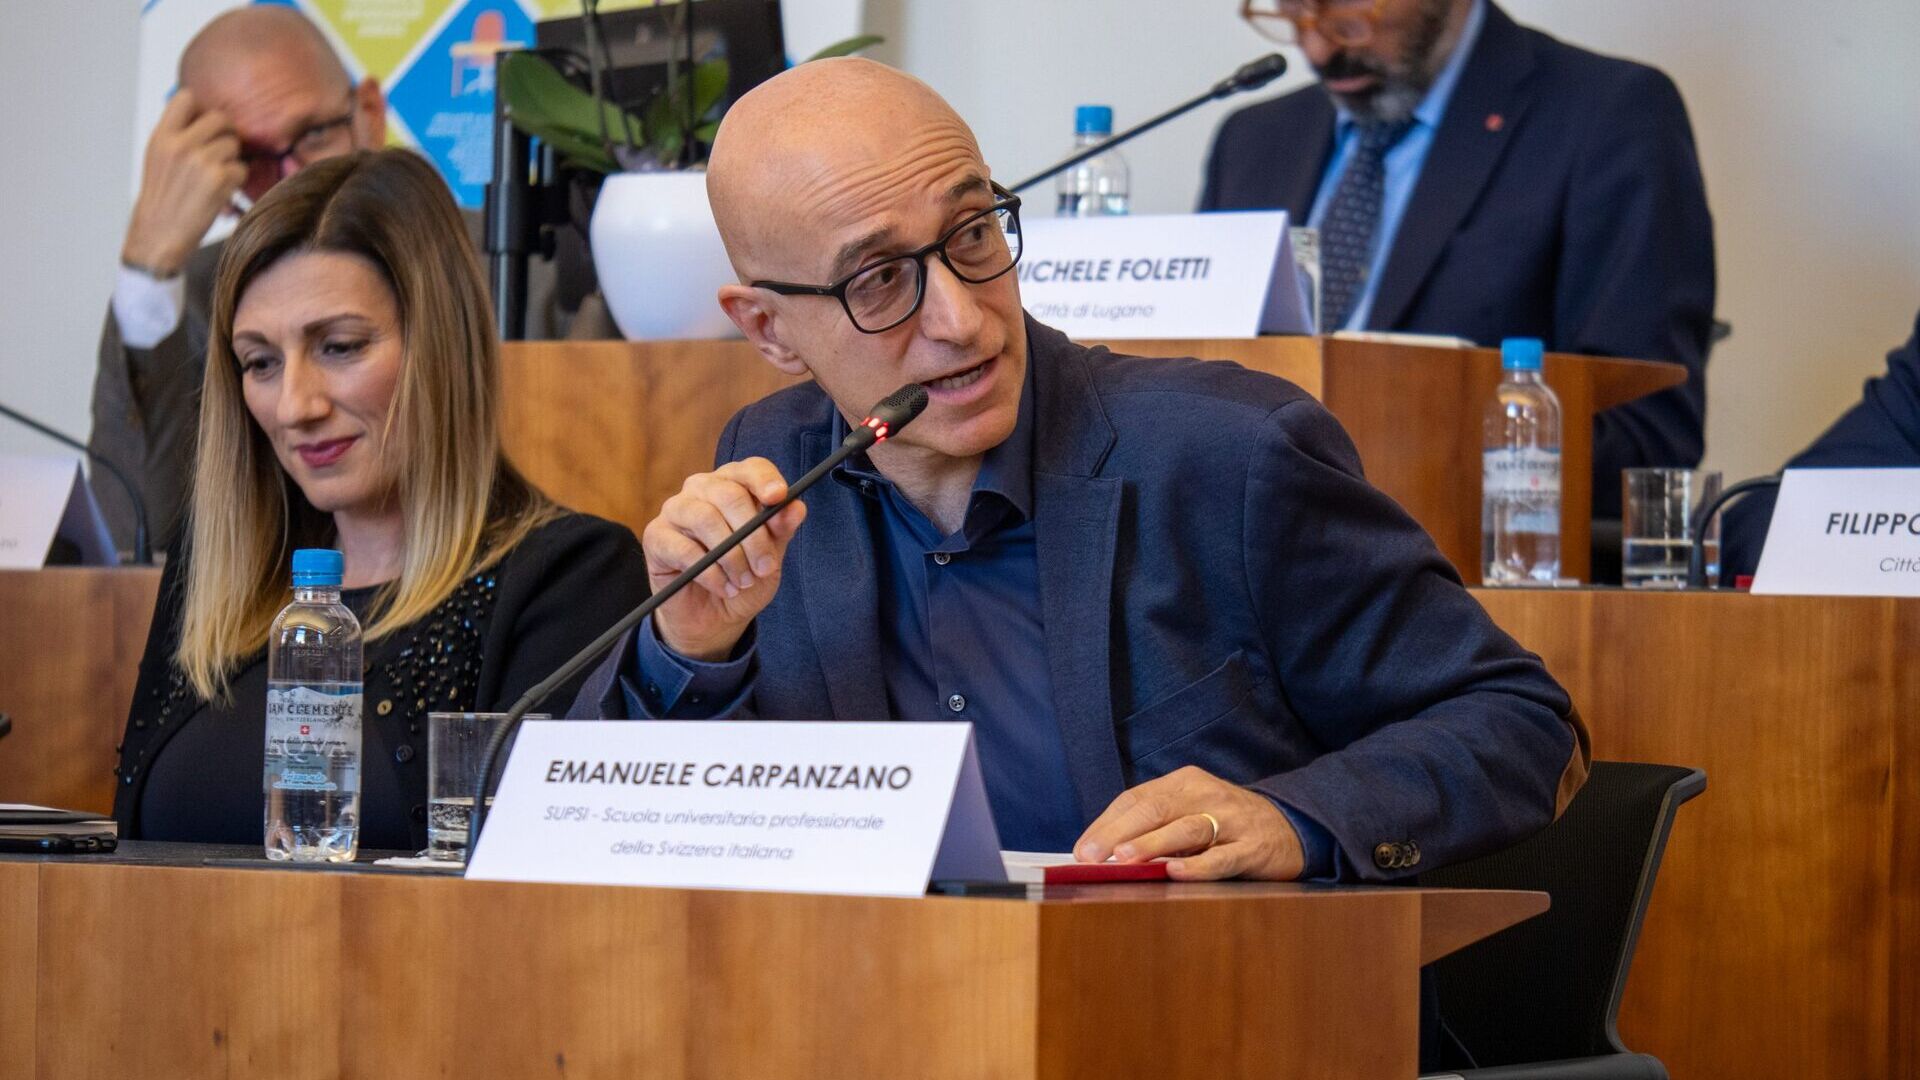 LTCC: Emanuele Carpanzano là Giám đốc Nghiên cứu, Phát triển và Chuyển giao Tri thức của Đại học Khoa học Ứng dụng và Nghệ thuật Ý, Thụy Sĩ